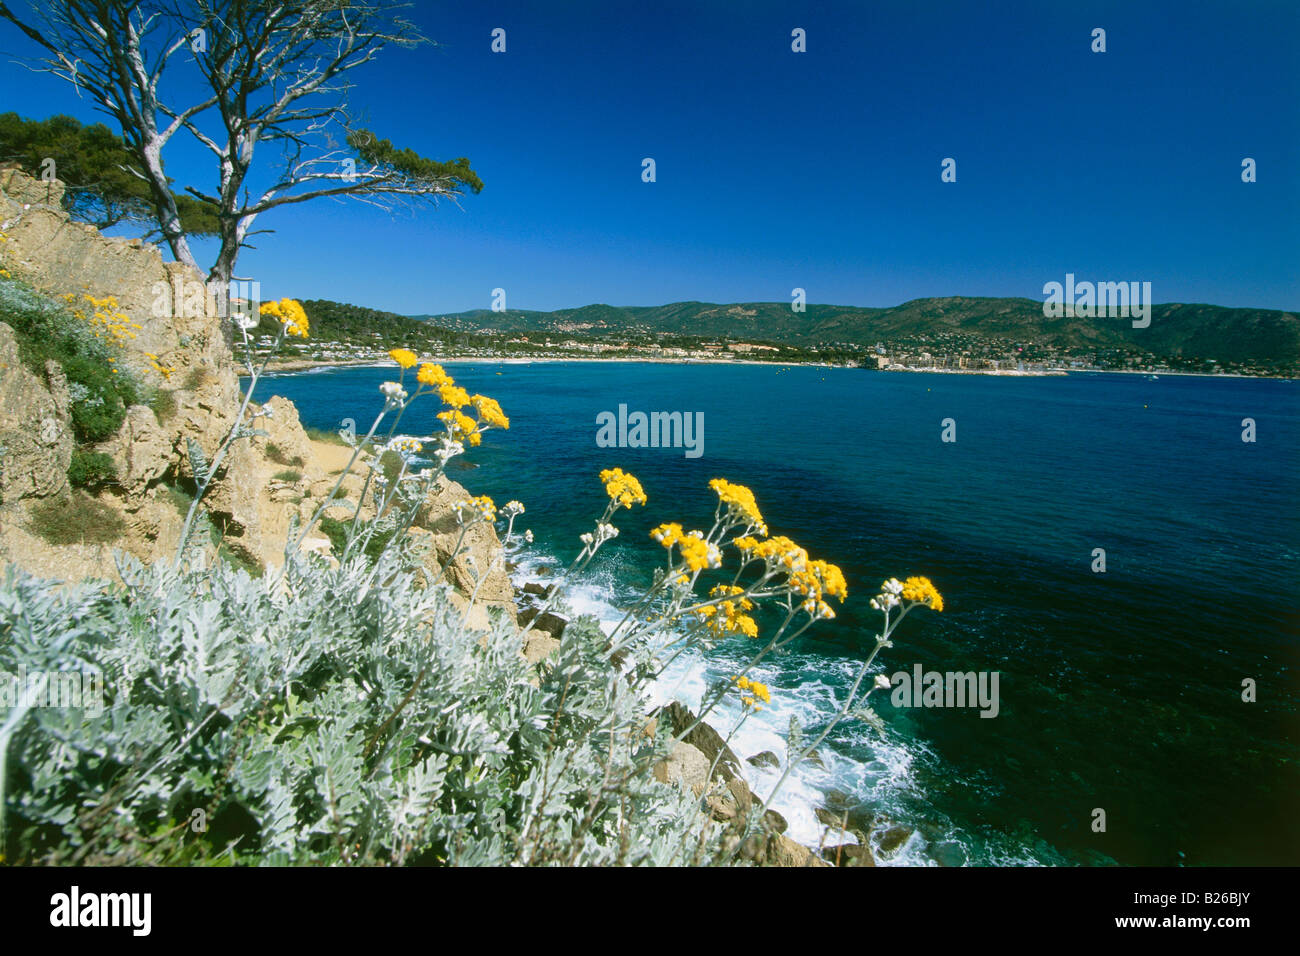 Coastal landscape and bay, Baie du Gaou near Le Lavandou, Cote d´Azur, Provence, France Stock Photo